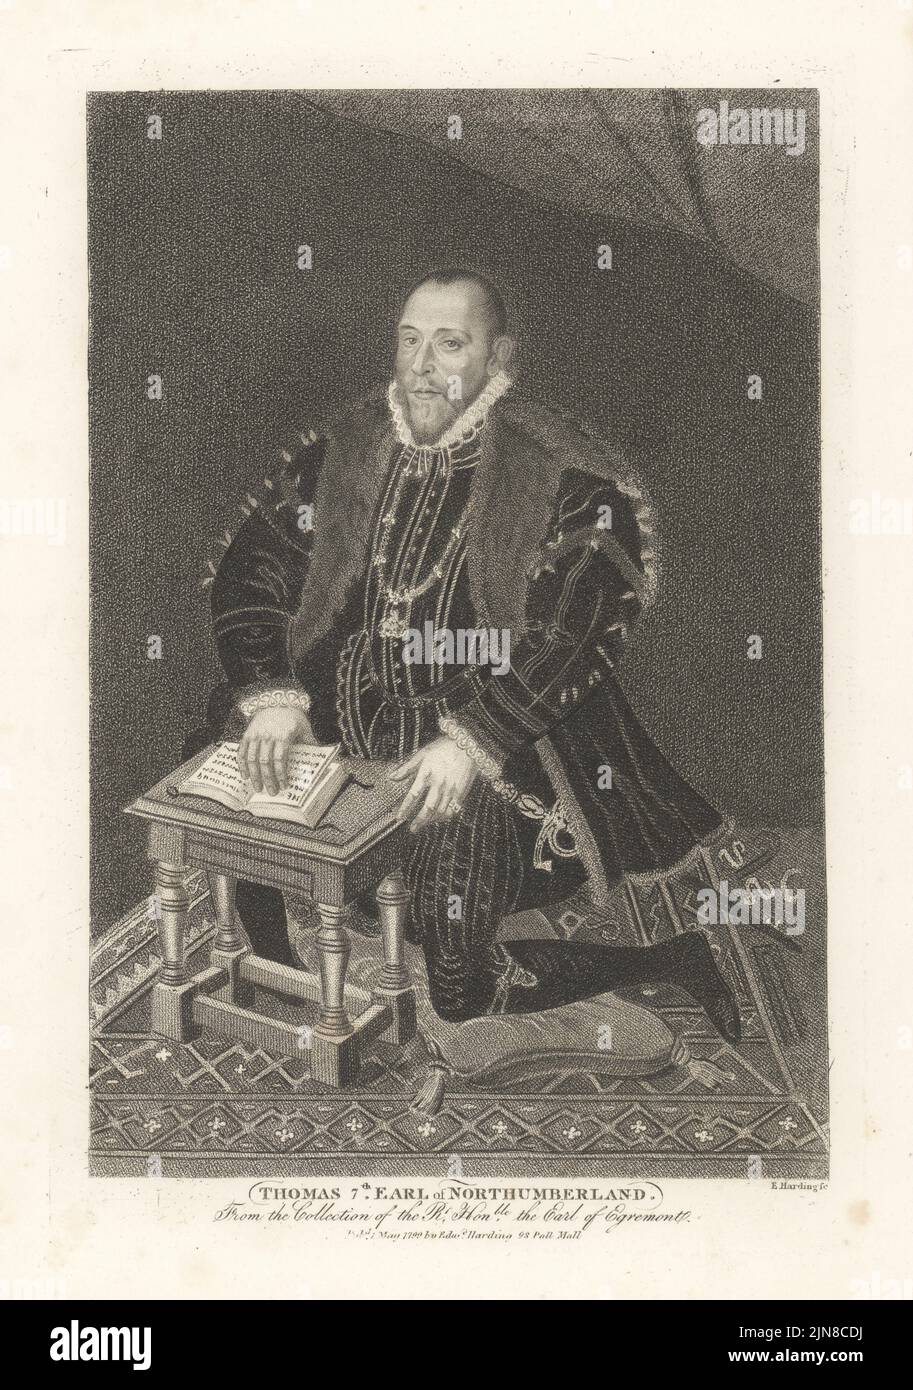 Thomas Percy, 7. Earl of Northumberland, kniete auf einem Kissen, trug ein schwarzes Doppelstück mit einem Pelzmantel, einer weißen Rüsche und dem Strumpfband des Strumpfordens, einem Hofschwert, und las ein Gebetsbuch. Thomas, 7. Earl of Northumberland, hingerichtet wegen Verrats, 1528-1572. Nach einem Gemälde von Steven van der Meulen in der Sammlung von Earl Egremont im Petworth House, West Sussex. Kupferstich von Edward Harding aus John Adolphus’ The British Cabinet, mit Porträts illustrer Persönlichkeiten, gedruckt von T. Bensley für E. Harding, 98 Pall Mall, London, 1799. Stockfoto